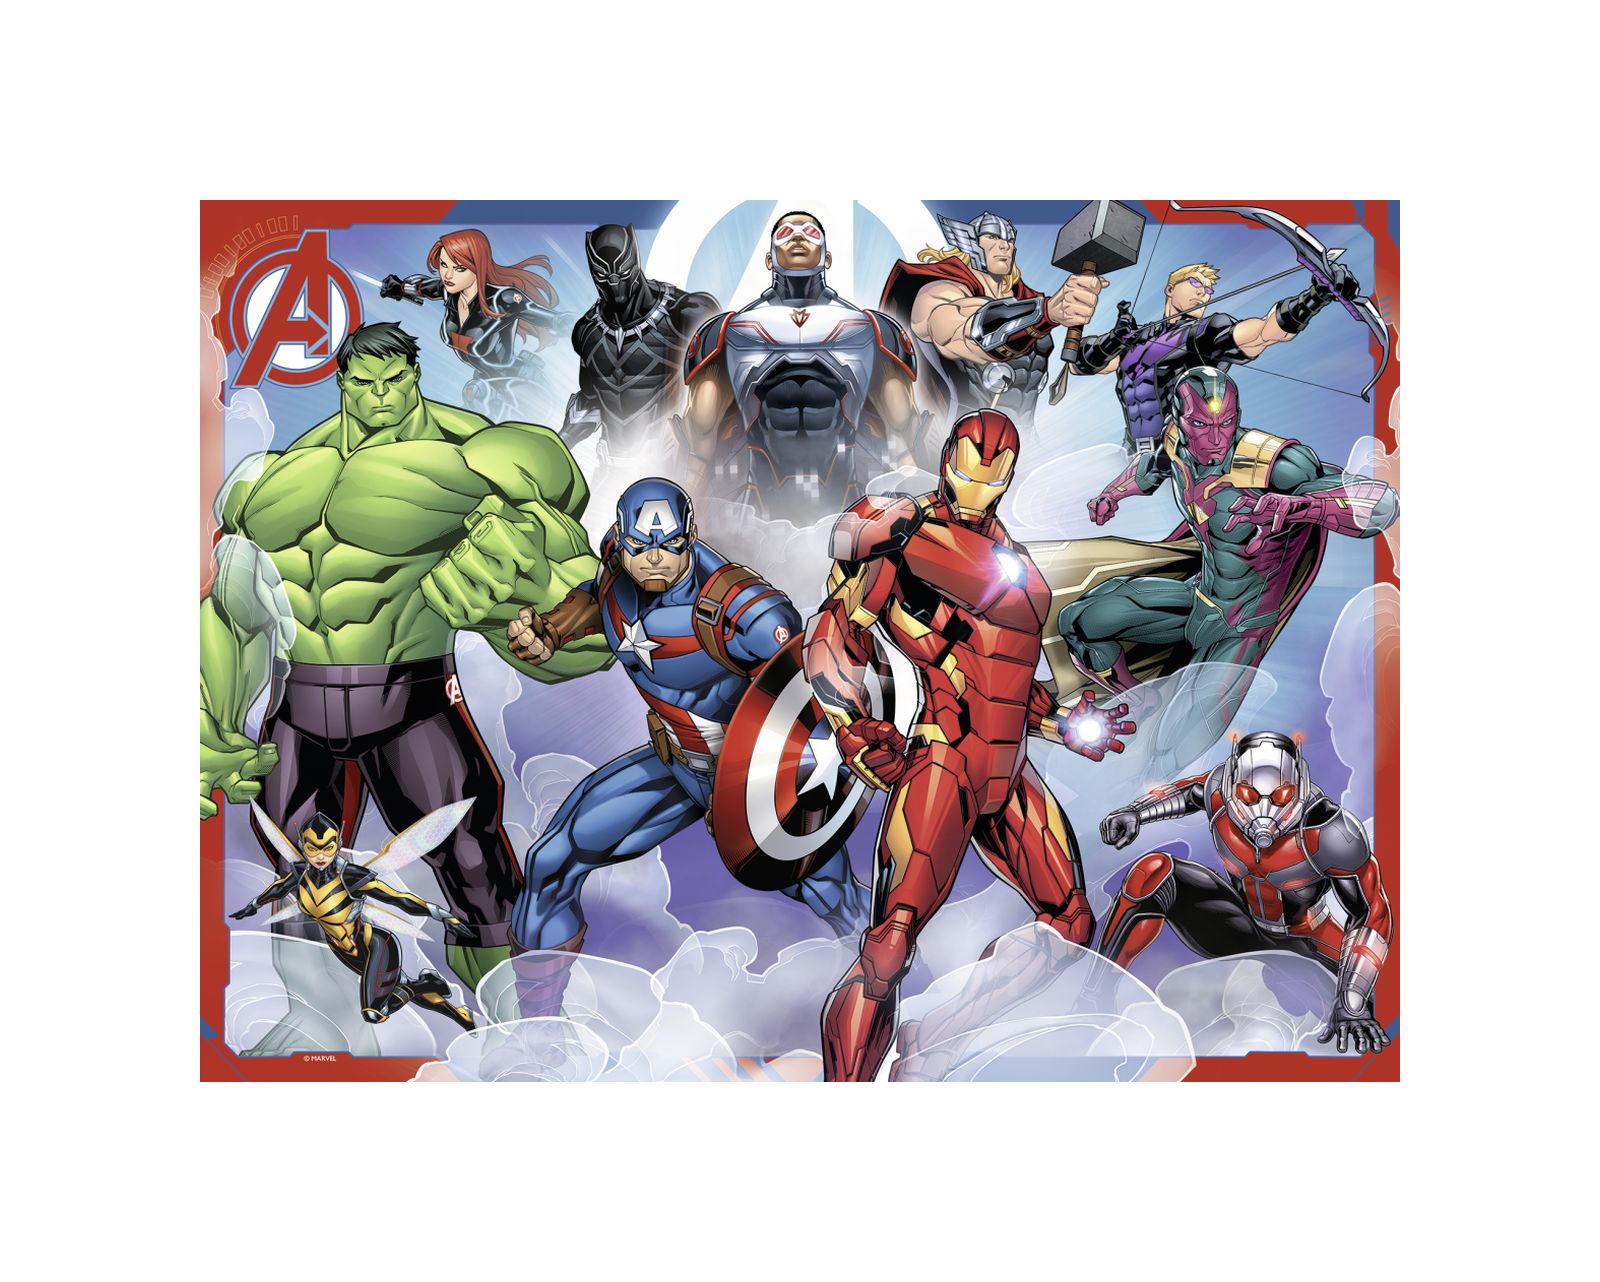 Ravensburger puzzle 100 pezzi xxl - avengers b - RAVENSBURGER, Avengers